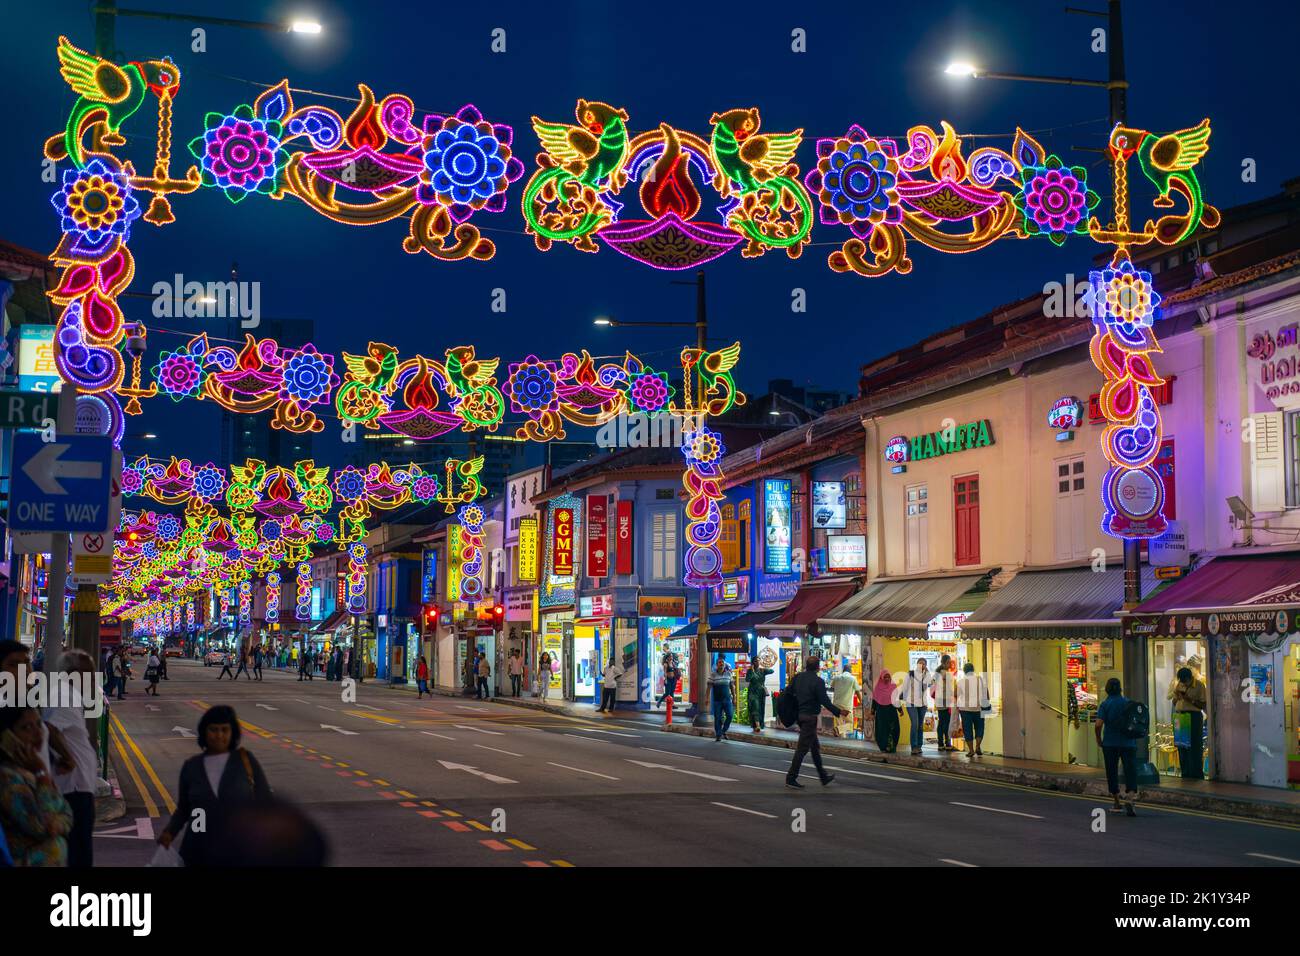 Decorazioni di strada colorate in Little India durante il festival annuale Diwali, noto anche come Festival delle luci. Little India, Singapore Foto Stock